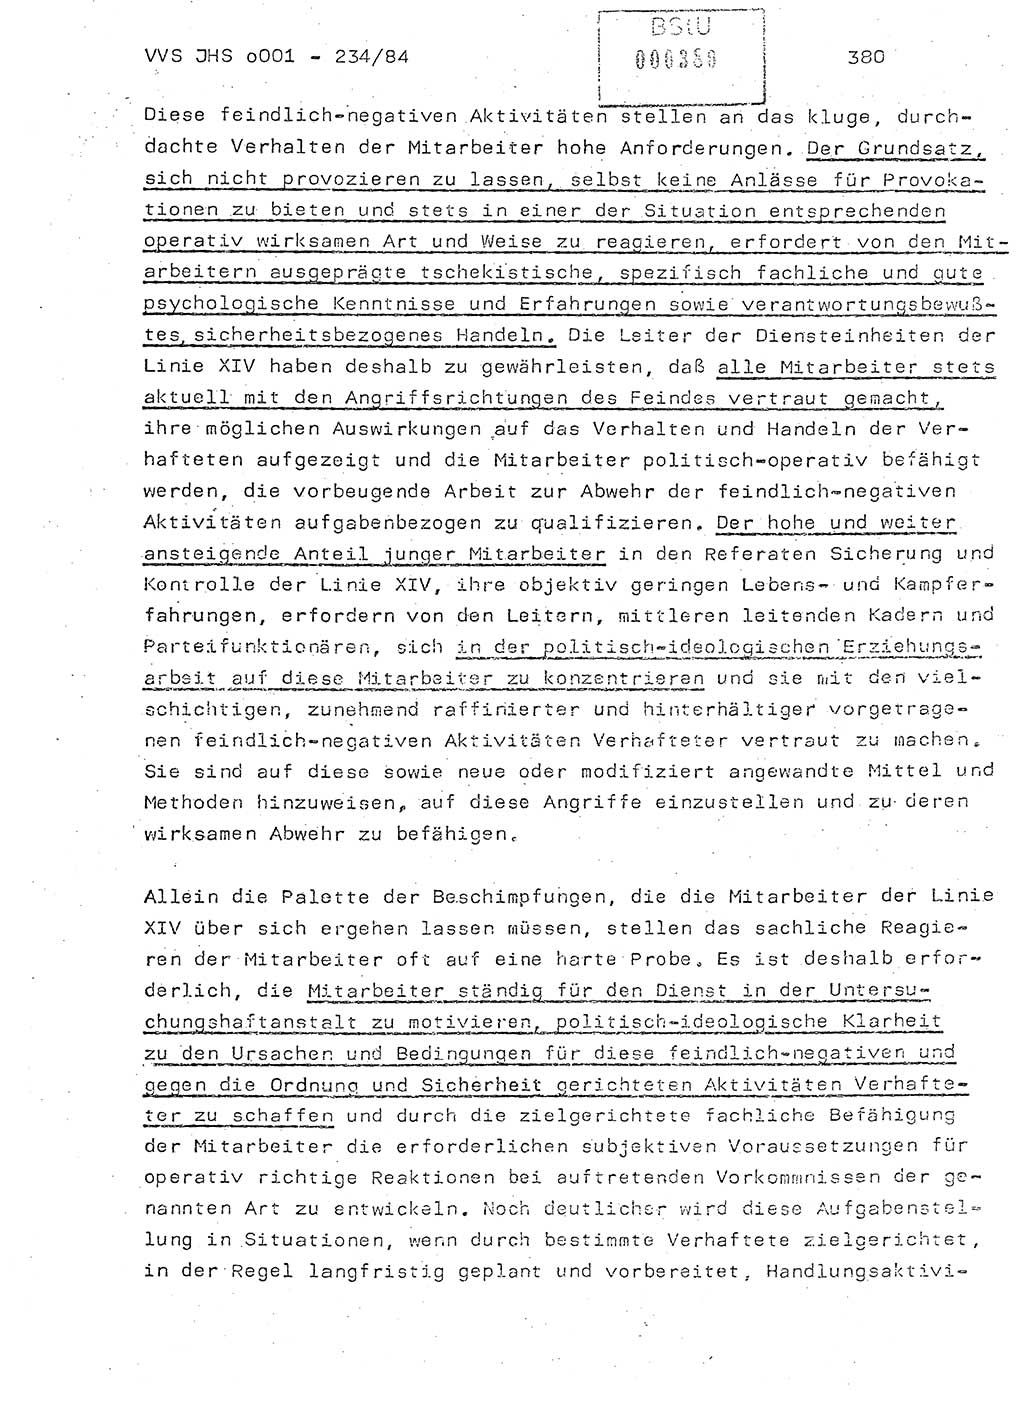 Dissertation Oberst Siegfried Rataizick (Abt. ⅩⅣ), Oberstleutnant Volkmar Heinz (Abt. ⅩⅣ), Oberstleutnant Werner Stein (HA Ⅸ), Hauptmann Heinz Conrad (JHS), Ministerium für Staatssicherheit (MfS) [Deutsche Demokratische Republik (DDR)], Juristische Hochschule (JHS), Vertrauliche Verschlußsache (VVS) o001-234/84, Potsdam 1984, Seite 380 (Diss. MfS DDR JHS VVS o001-234/84 1984, S. 380)